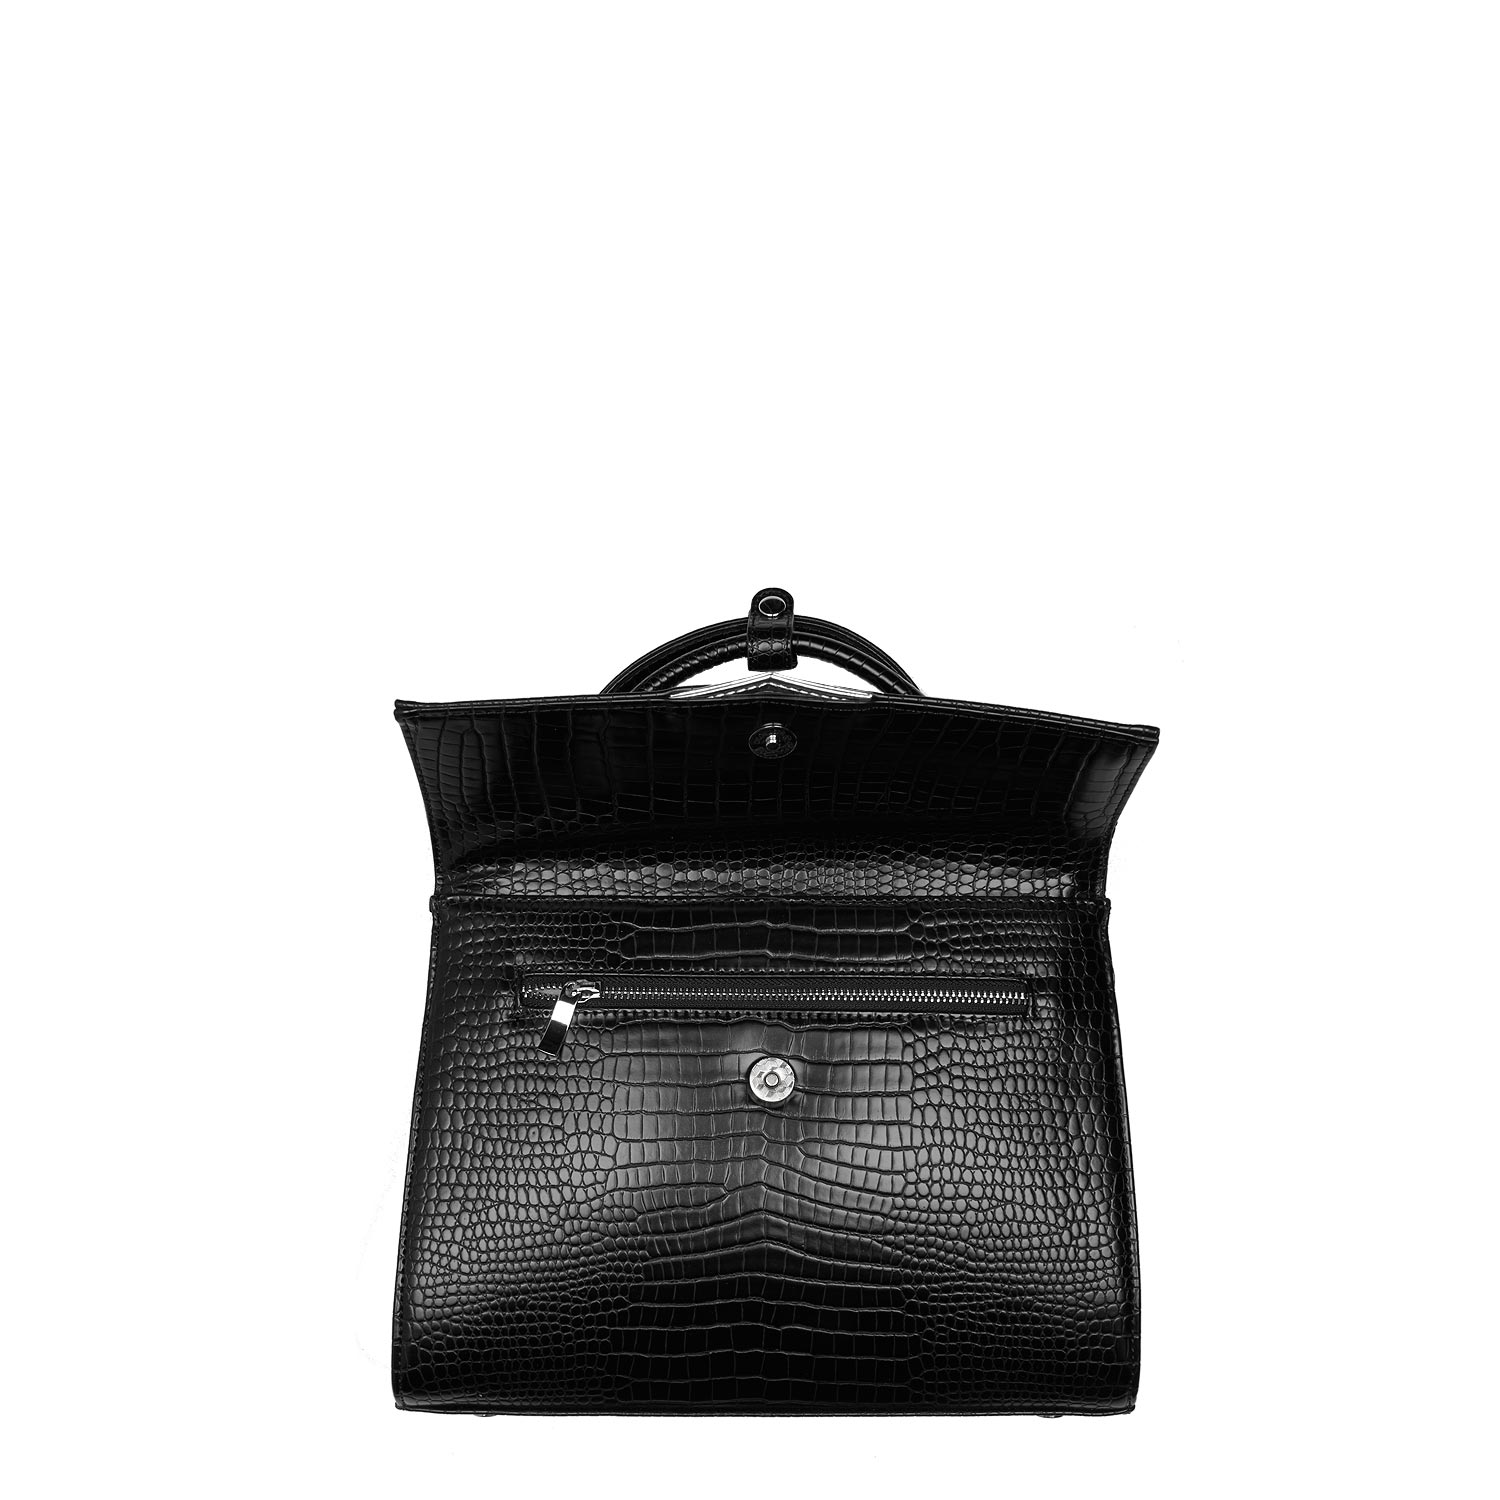 Handbag Croco Black 10"